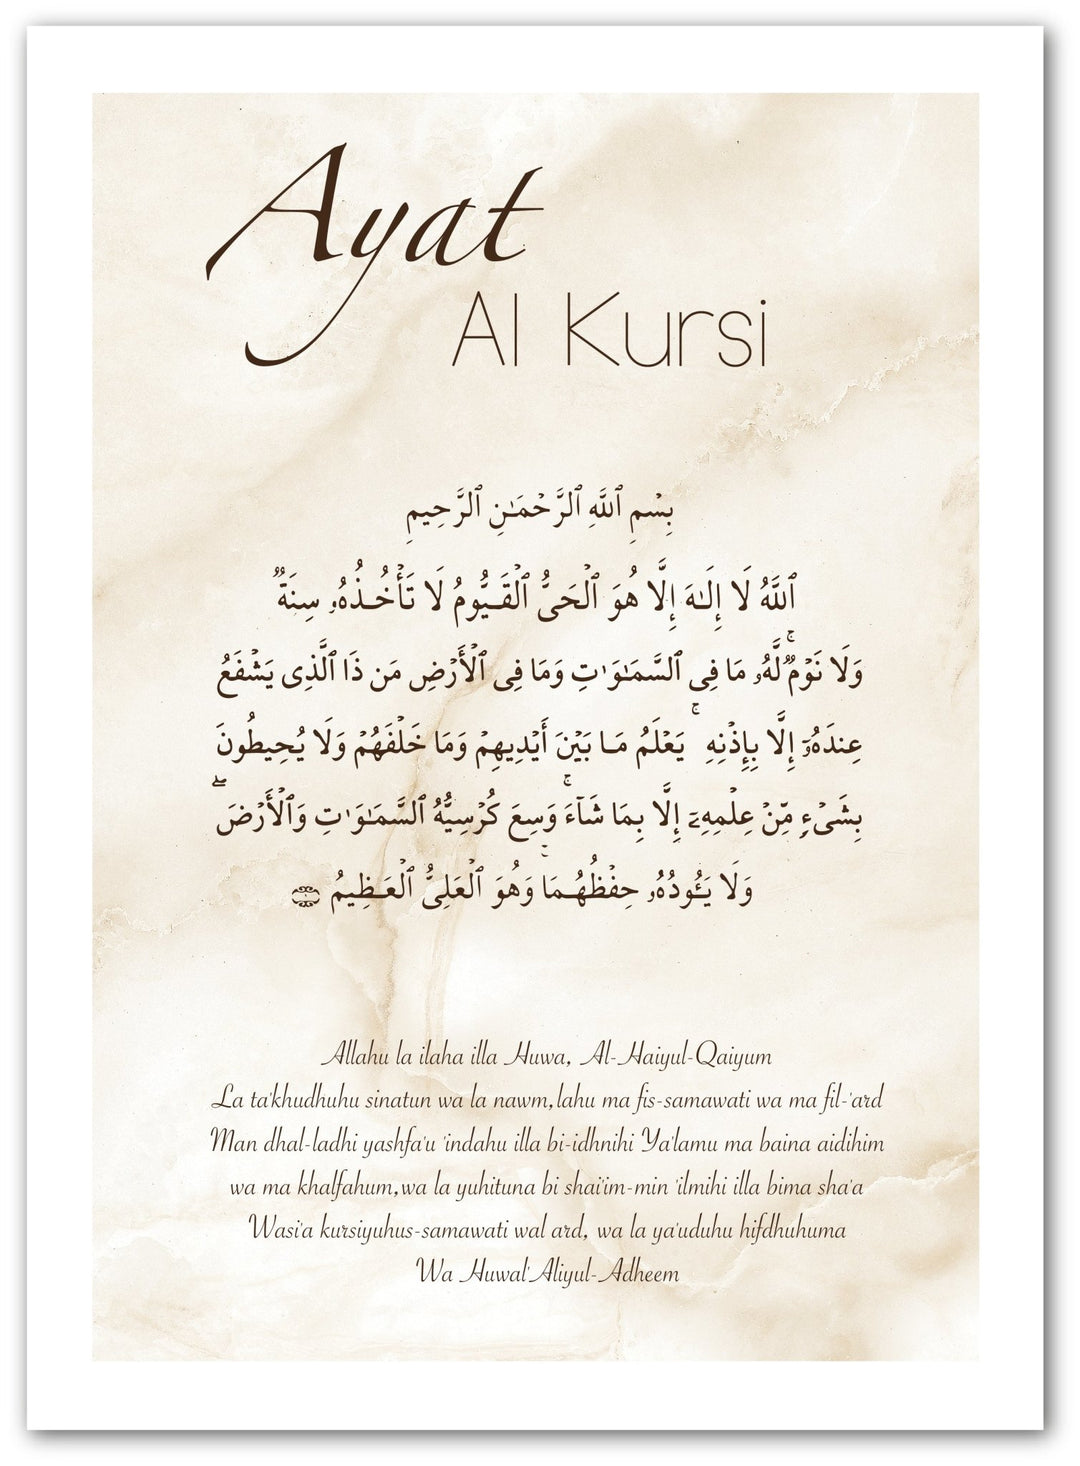 Ayat Al Kursi - Arabisch und Latein - Beautiful Wall